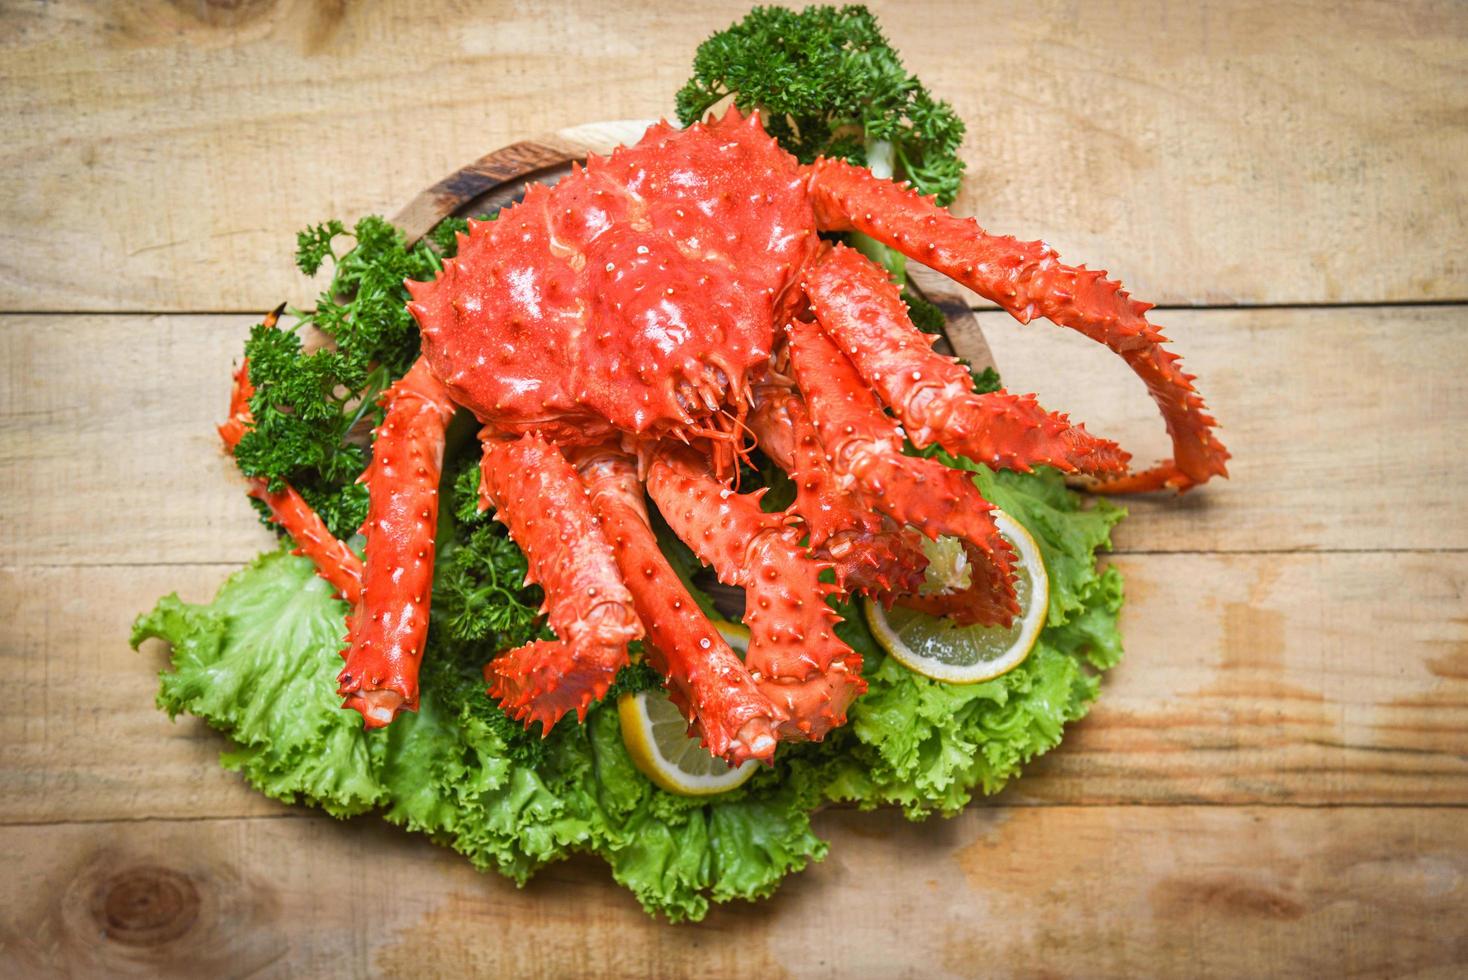 crabe royal d'alaska cuit à la vapeur ou fruits de mer bouillis et légumes salade de laitue avec fond en bois - crabe rouge hokkaido photo